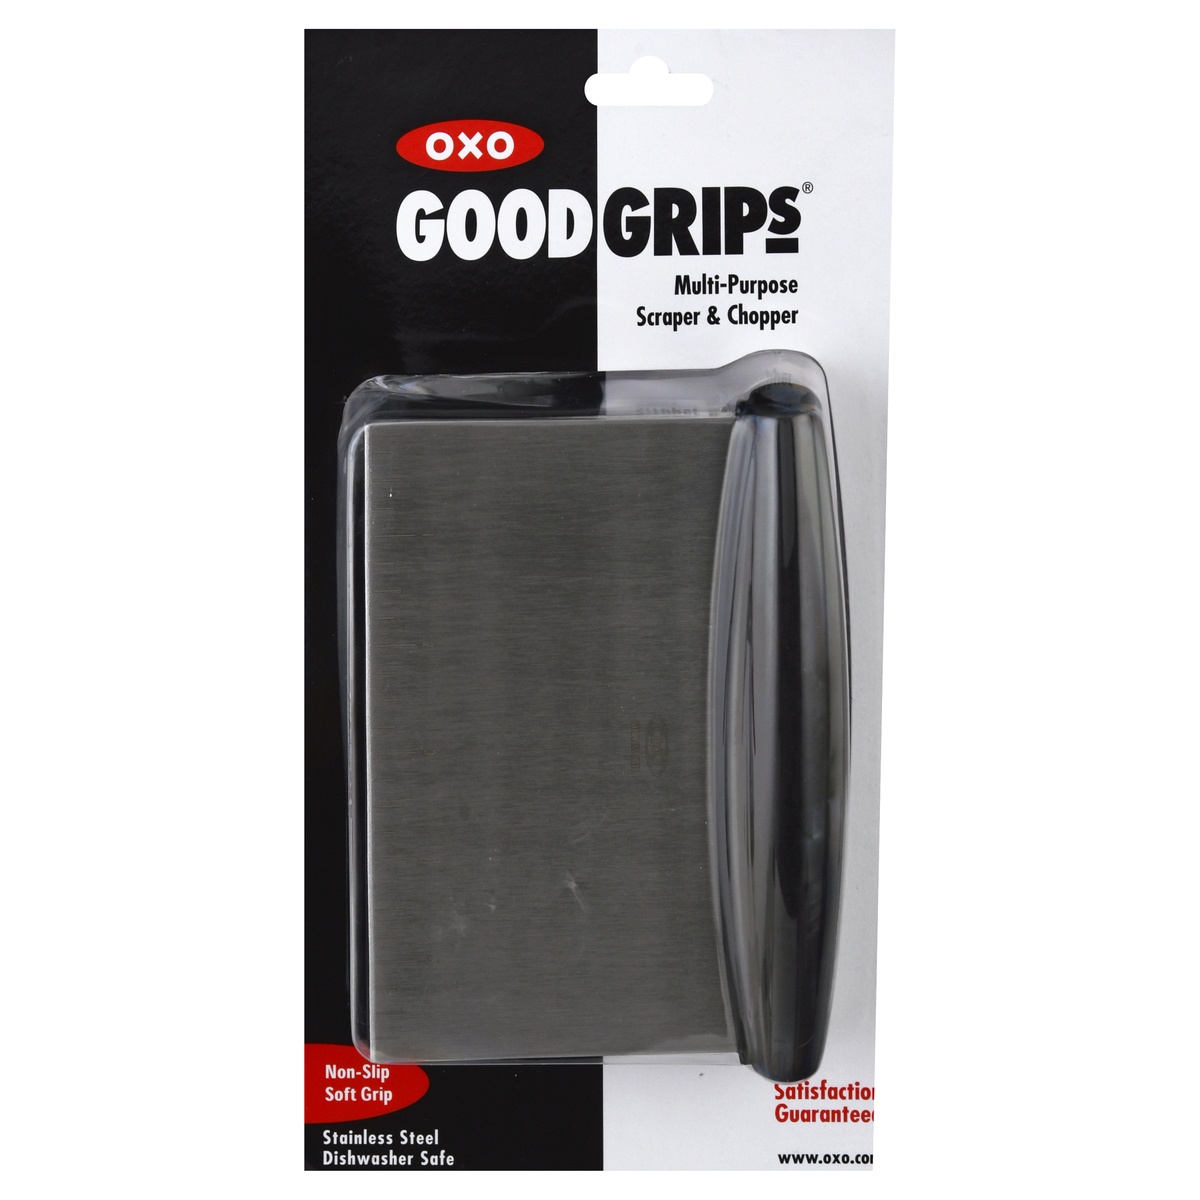 OXO Good Grips Multi-Purpose Scraper & Chopper